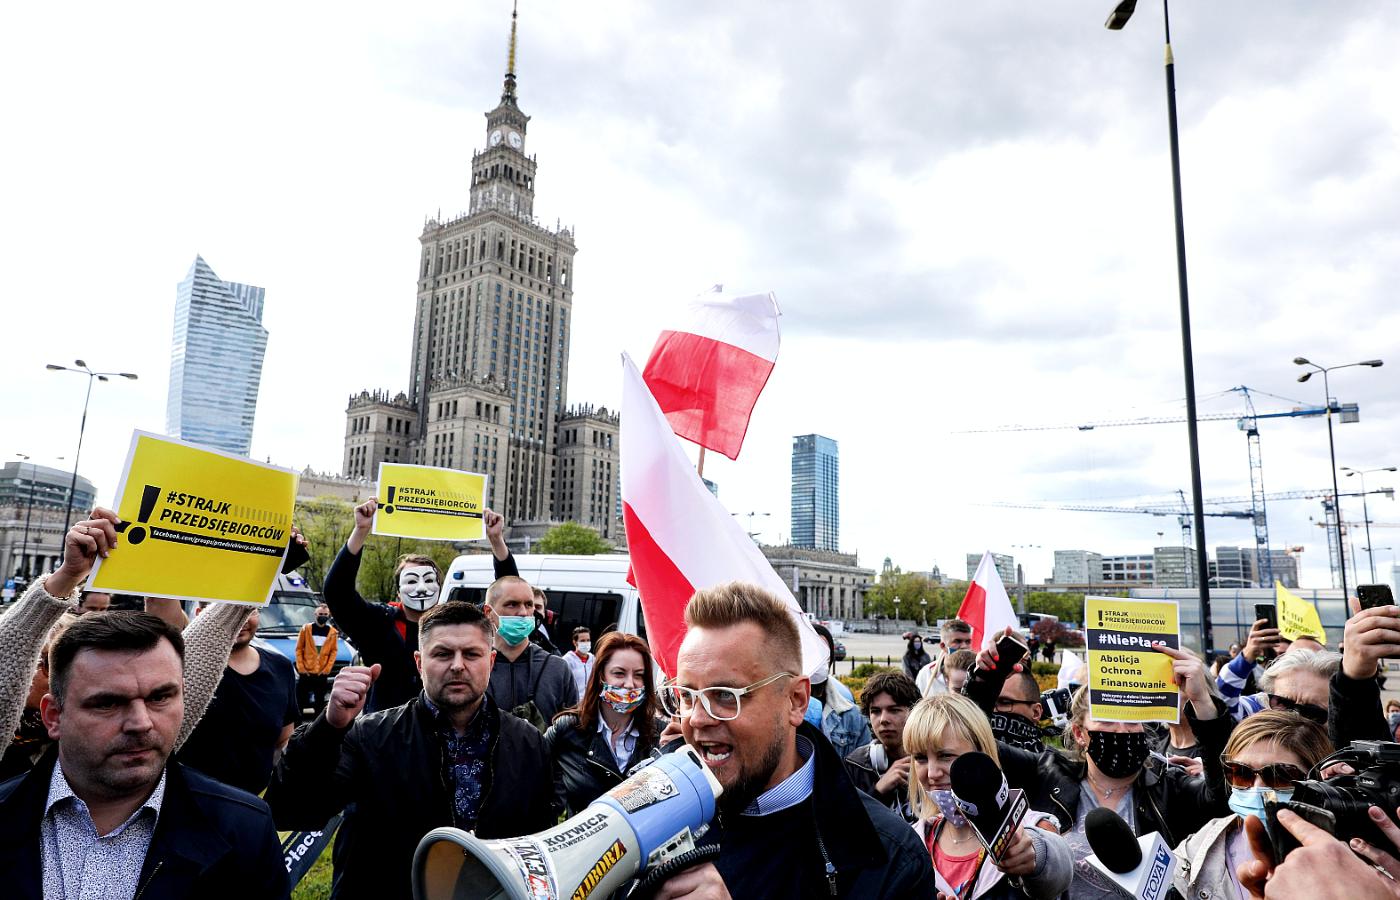 Paweł Tanajno na czele Strajku przedsiębiorców w Warszawie